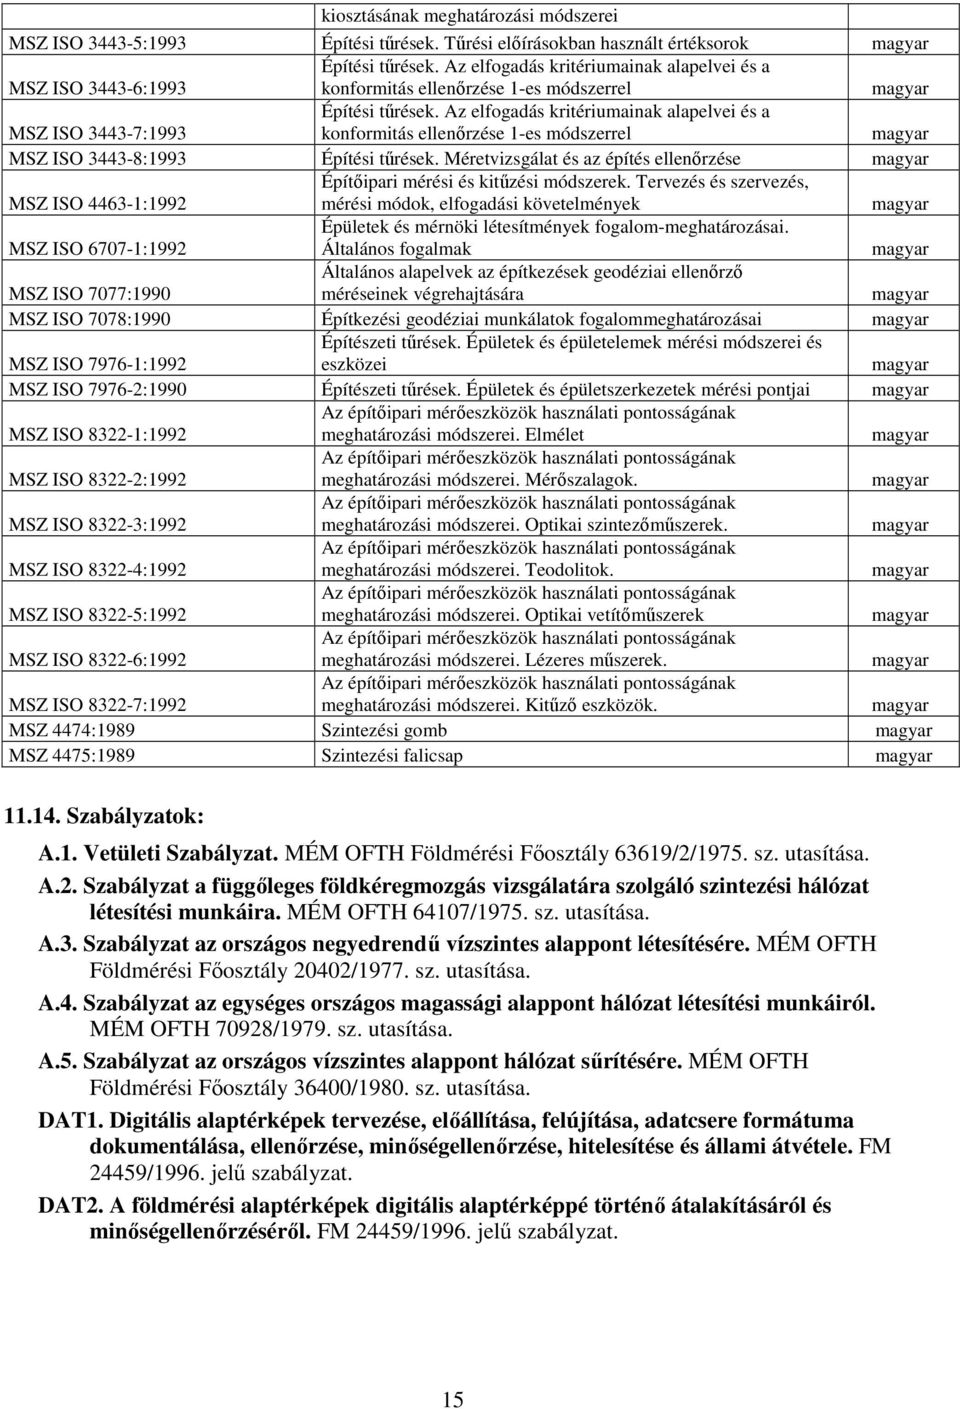 Az elfogadás kritériumainak alapelvei és a konformitás ellenőrzése 1-es módszerrel magyar MSZ ISO 3443-8:1993 Építési tűrések.